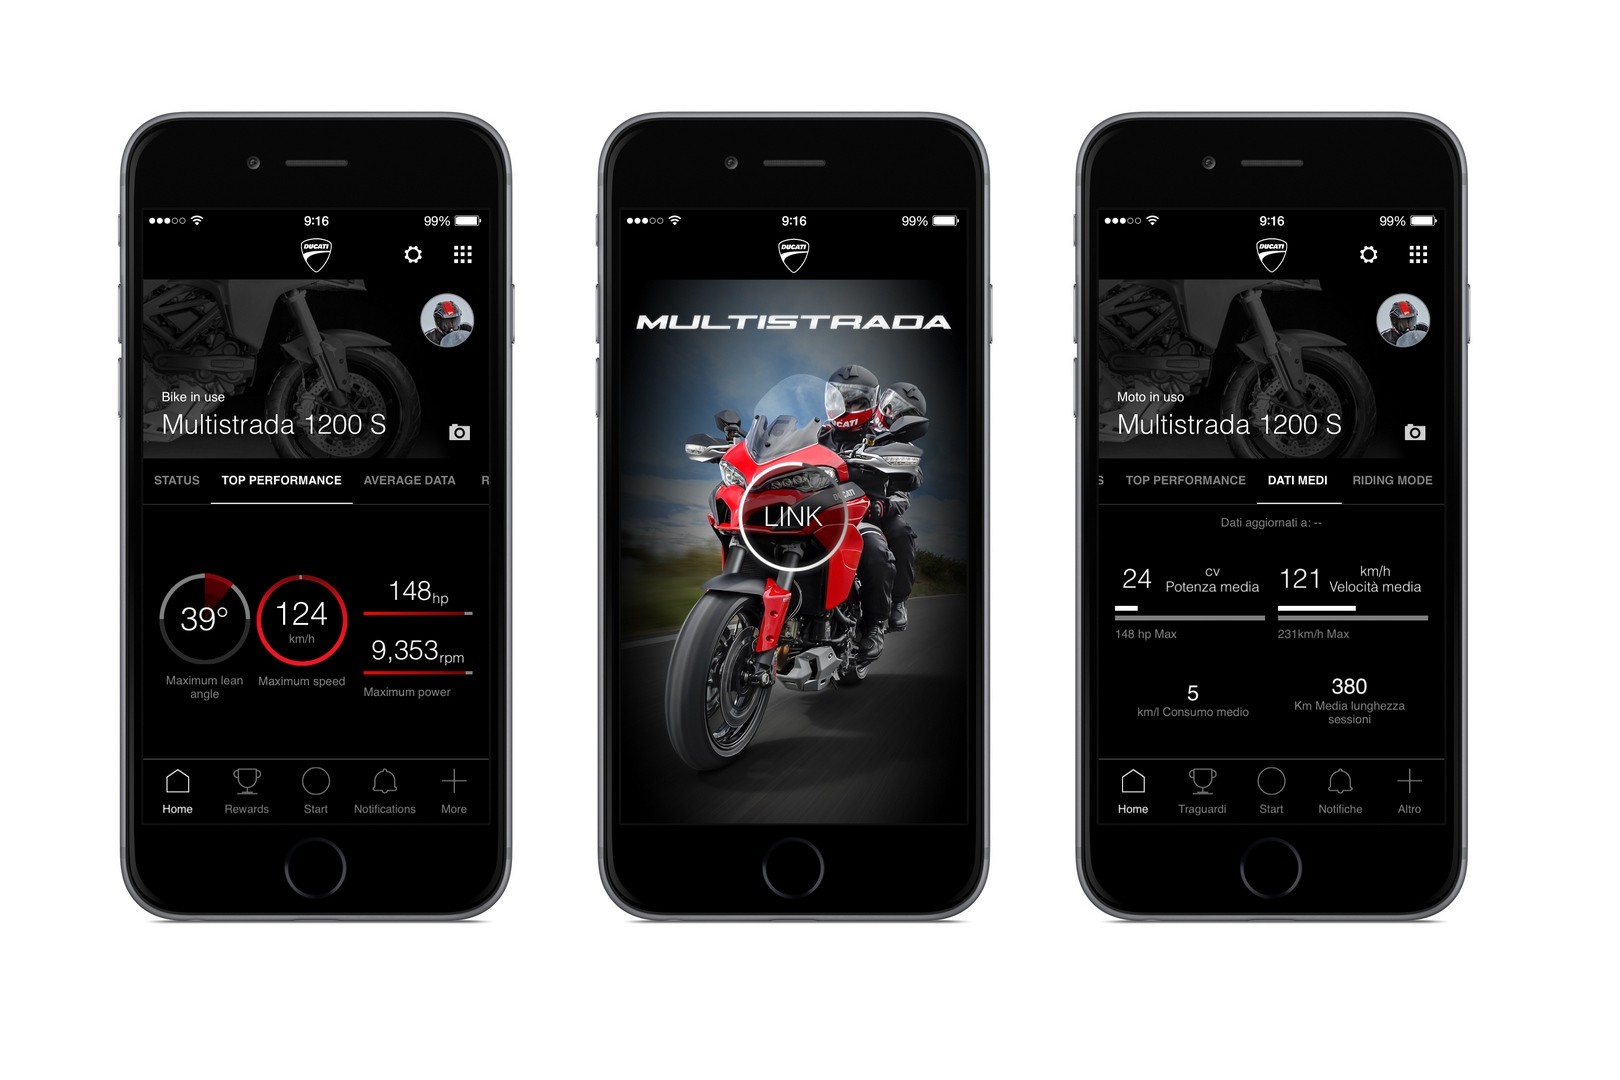 Xe Ducati có ứng dụng kết nối smartphone